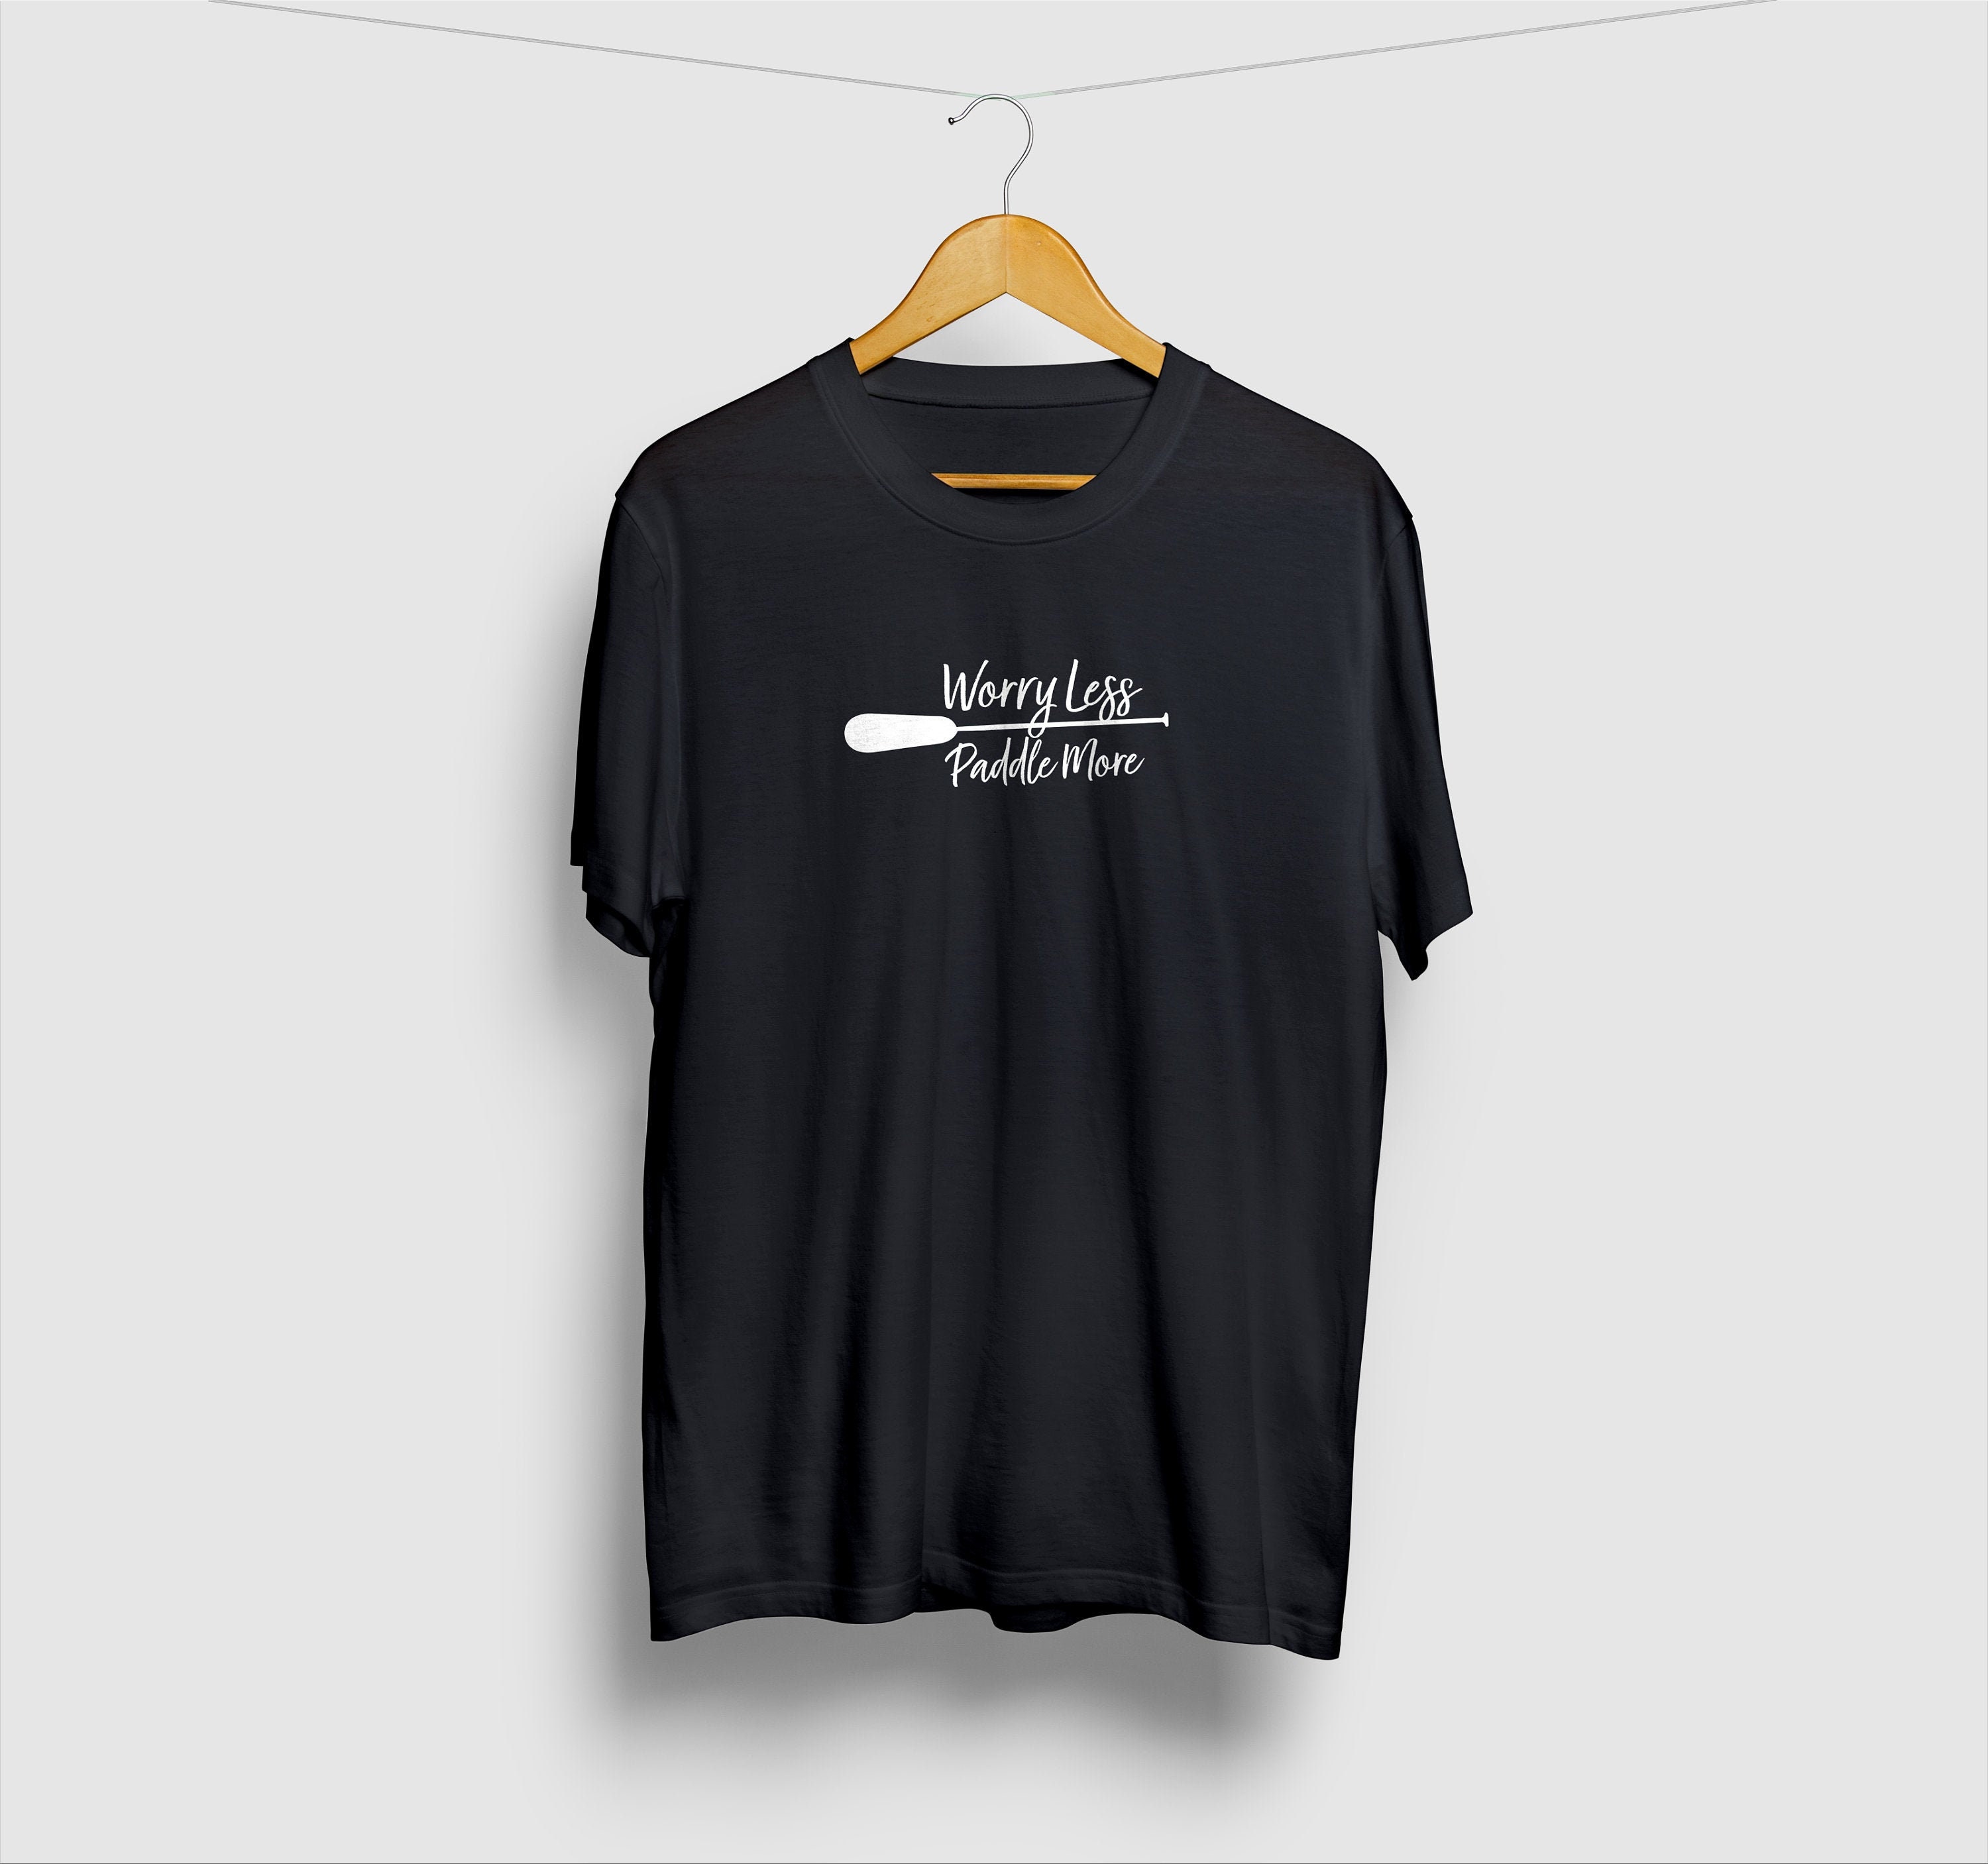 Worry Less Paddle More T-shirt Kayak Shirt Kayaking Gift | Etsy